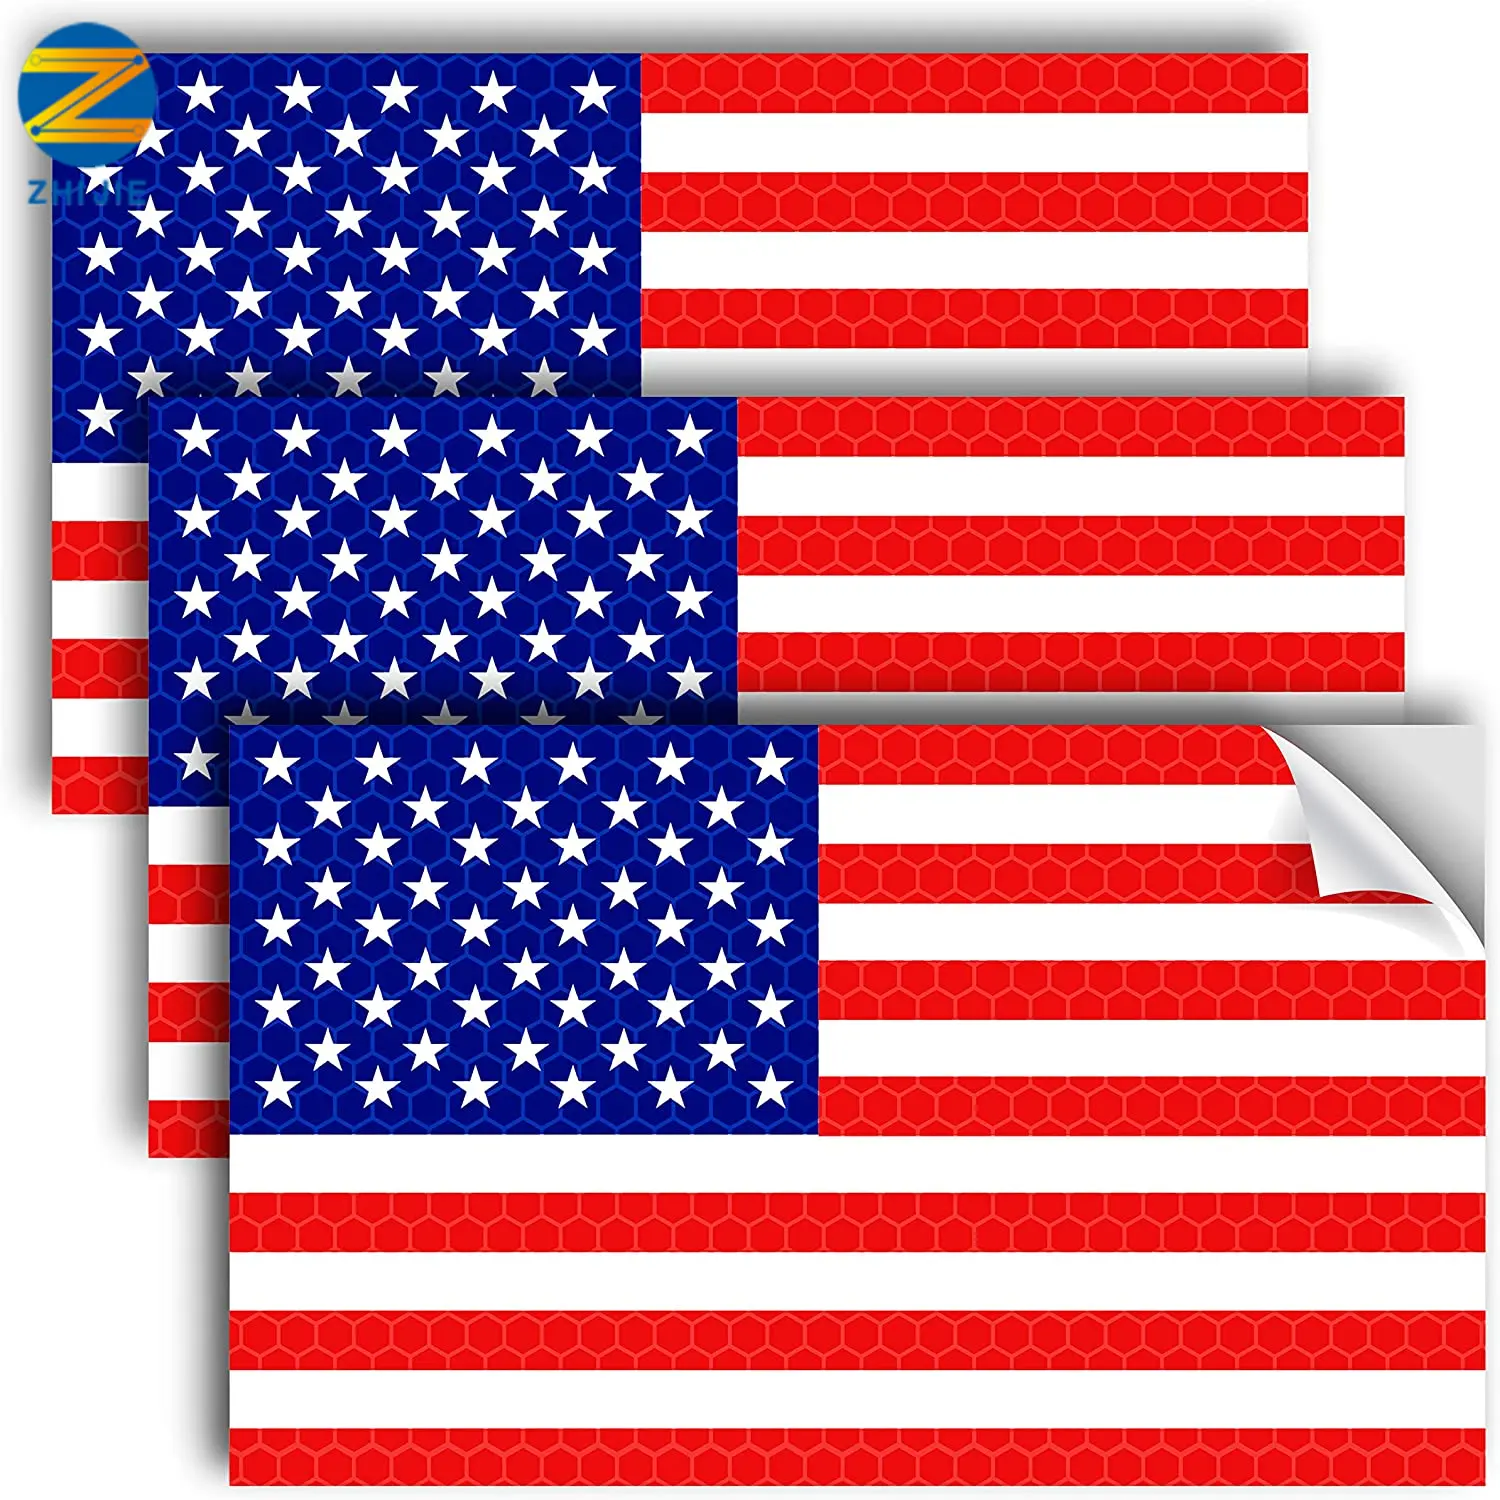 Autocollant pare-chocs réfléchissant avec drapeau américain, 5X3 pouces, Support militaire américain en vinyle